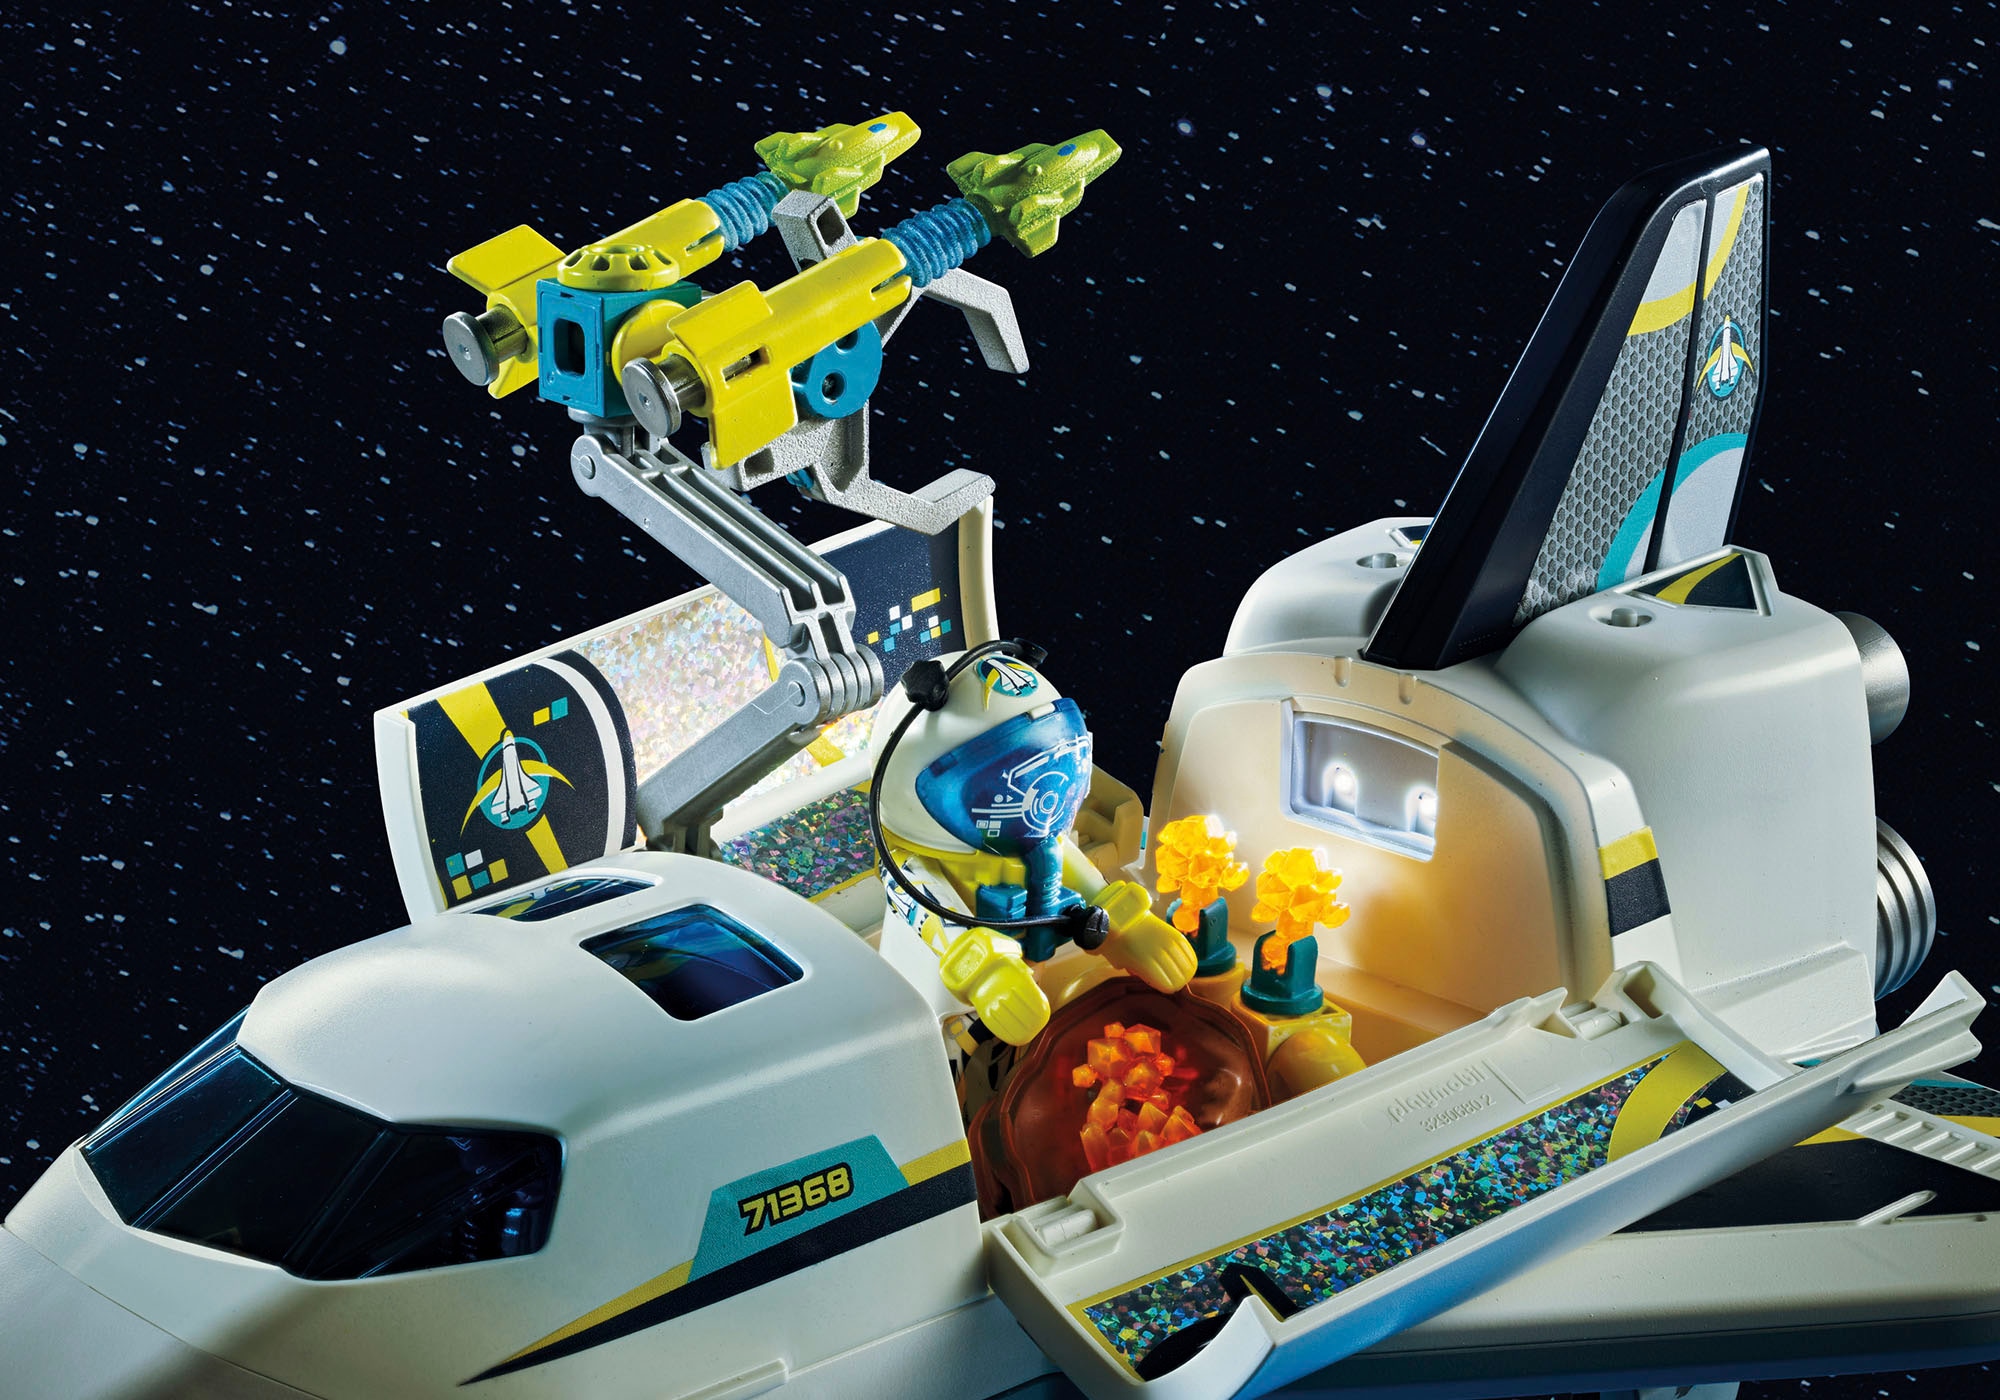 Playmobil® Konstruktions-Spielset »Space-Shuttle auf Mission (71368), Space«, (72 St.), mit Licht